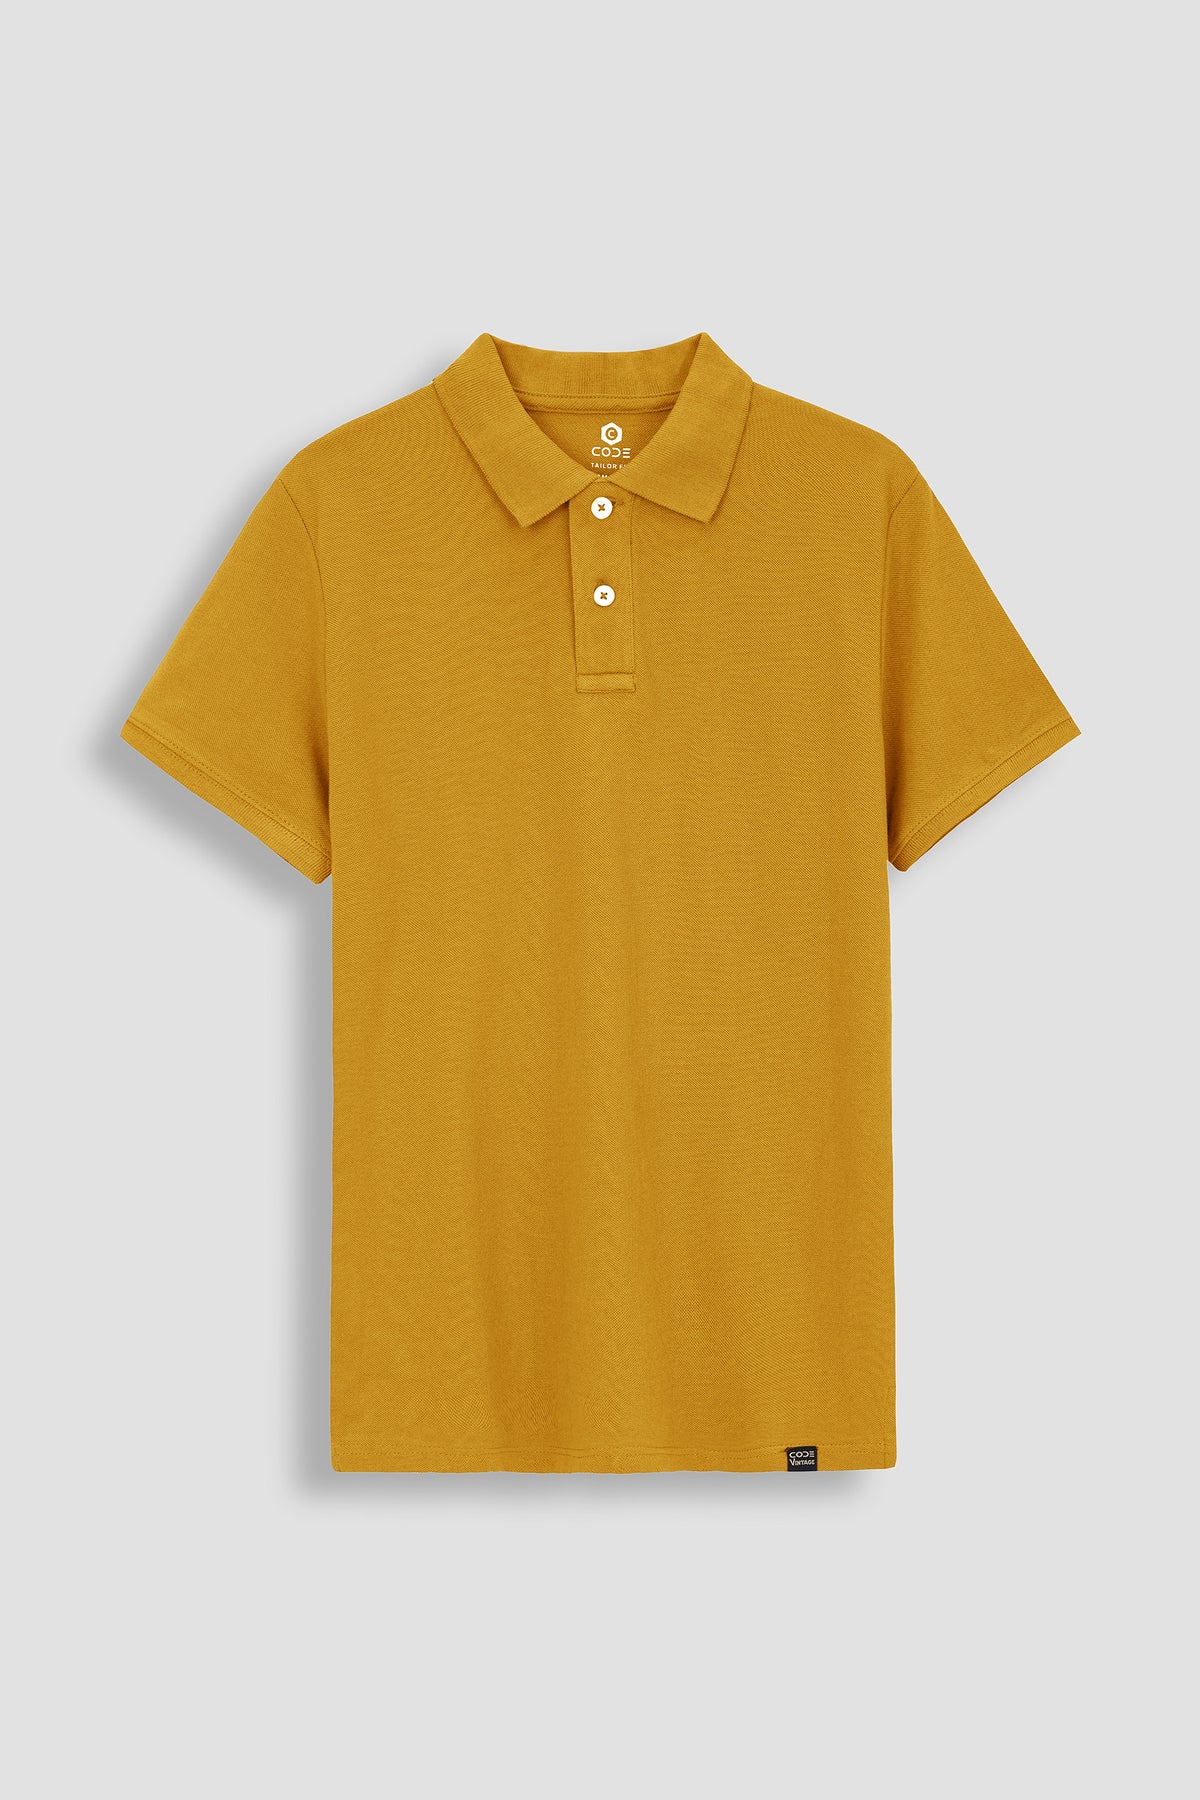 Rust Yellow Pique Polo Shirt